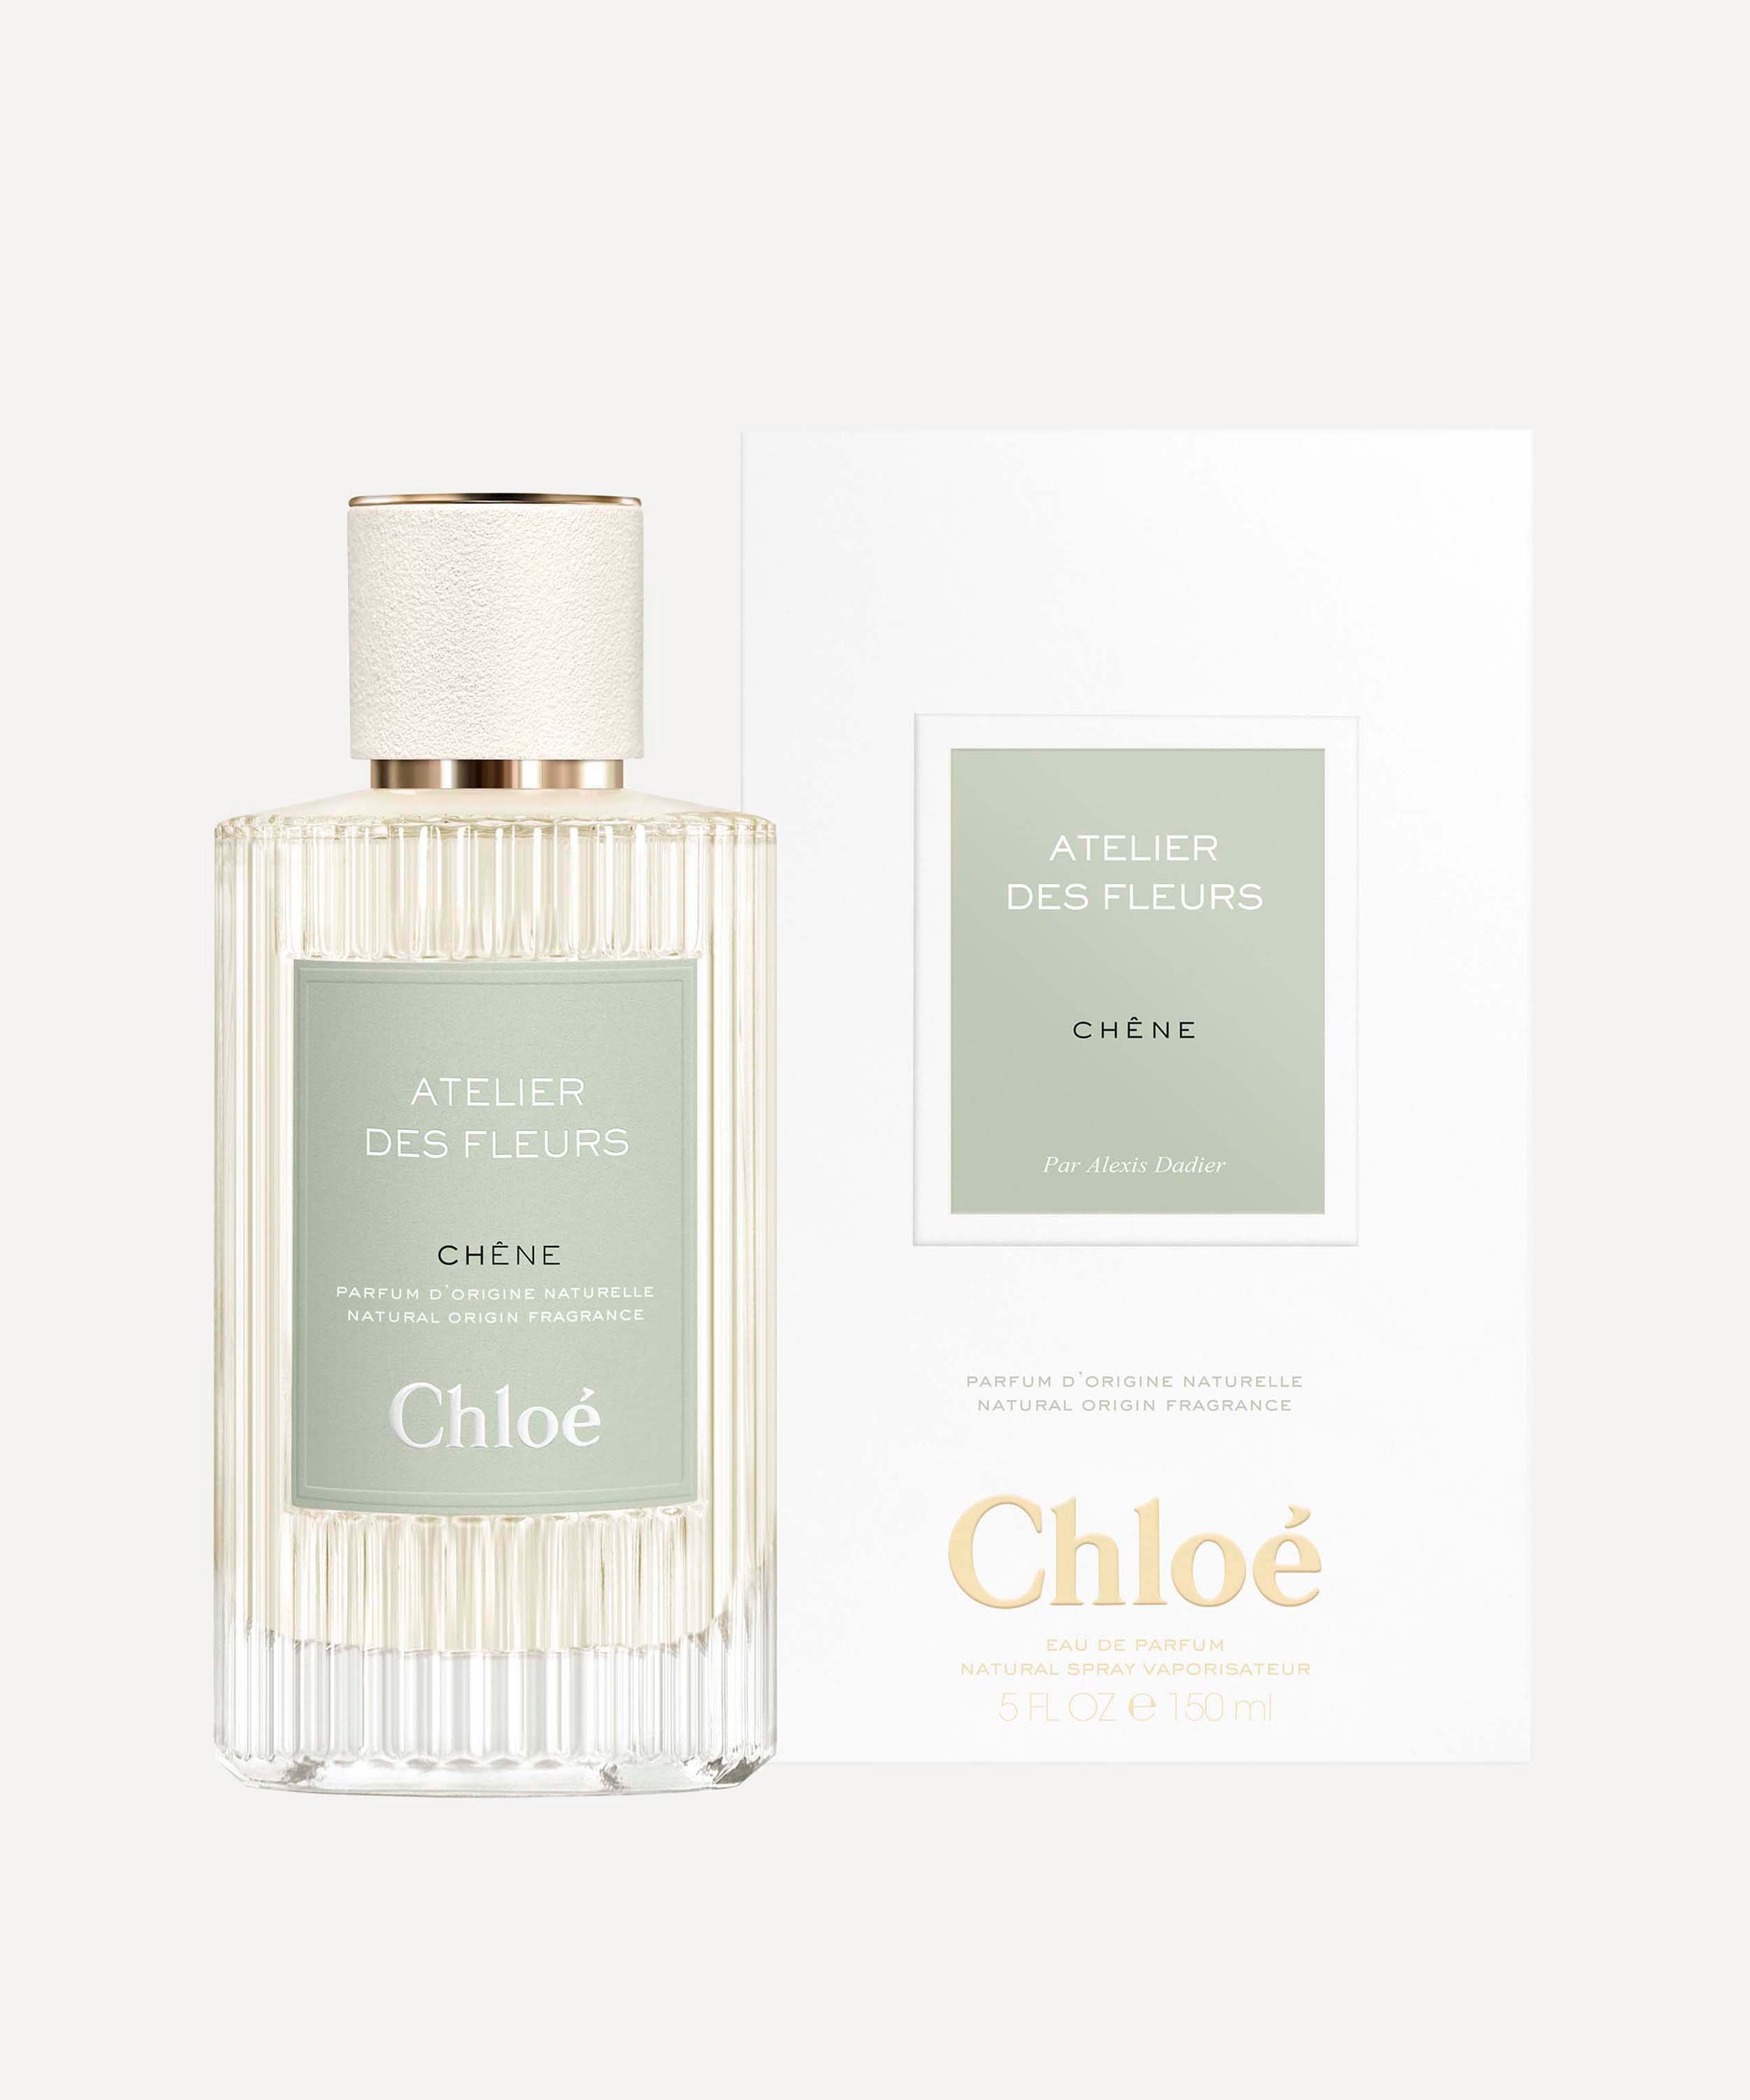 Chloé - Atelier des Fleurs Chêne Eau de Parfum 150ml image number 1